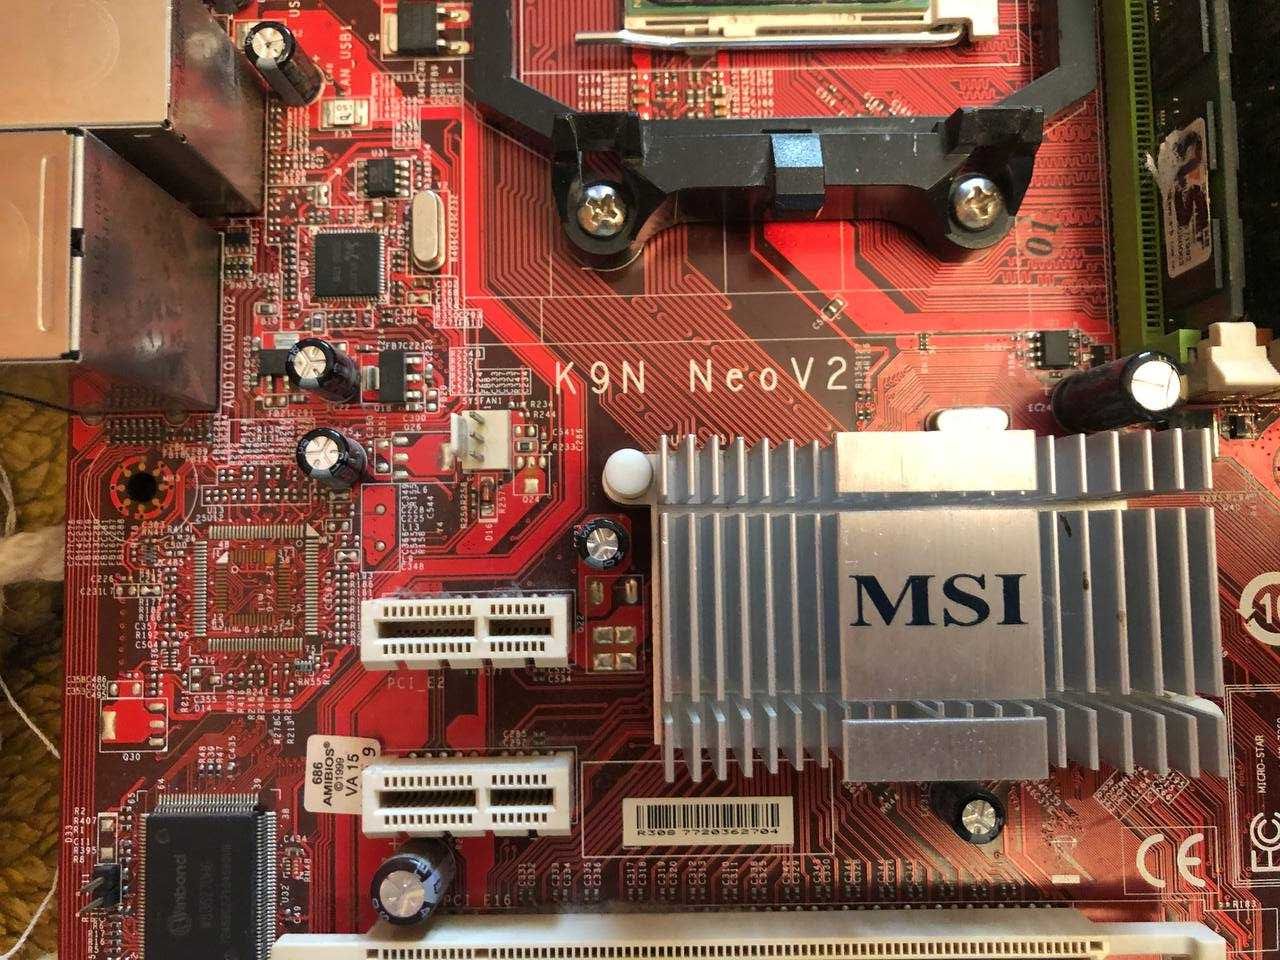 K9N Neo V2+ Athlon 6000+ DDR2 800 8gb + Radeon 6750 1gb